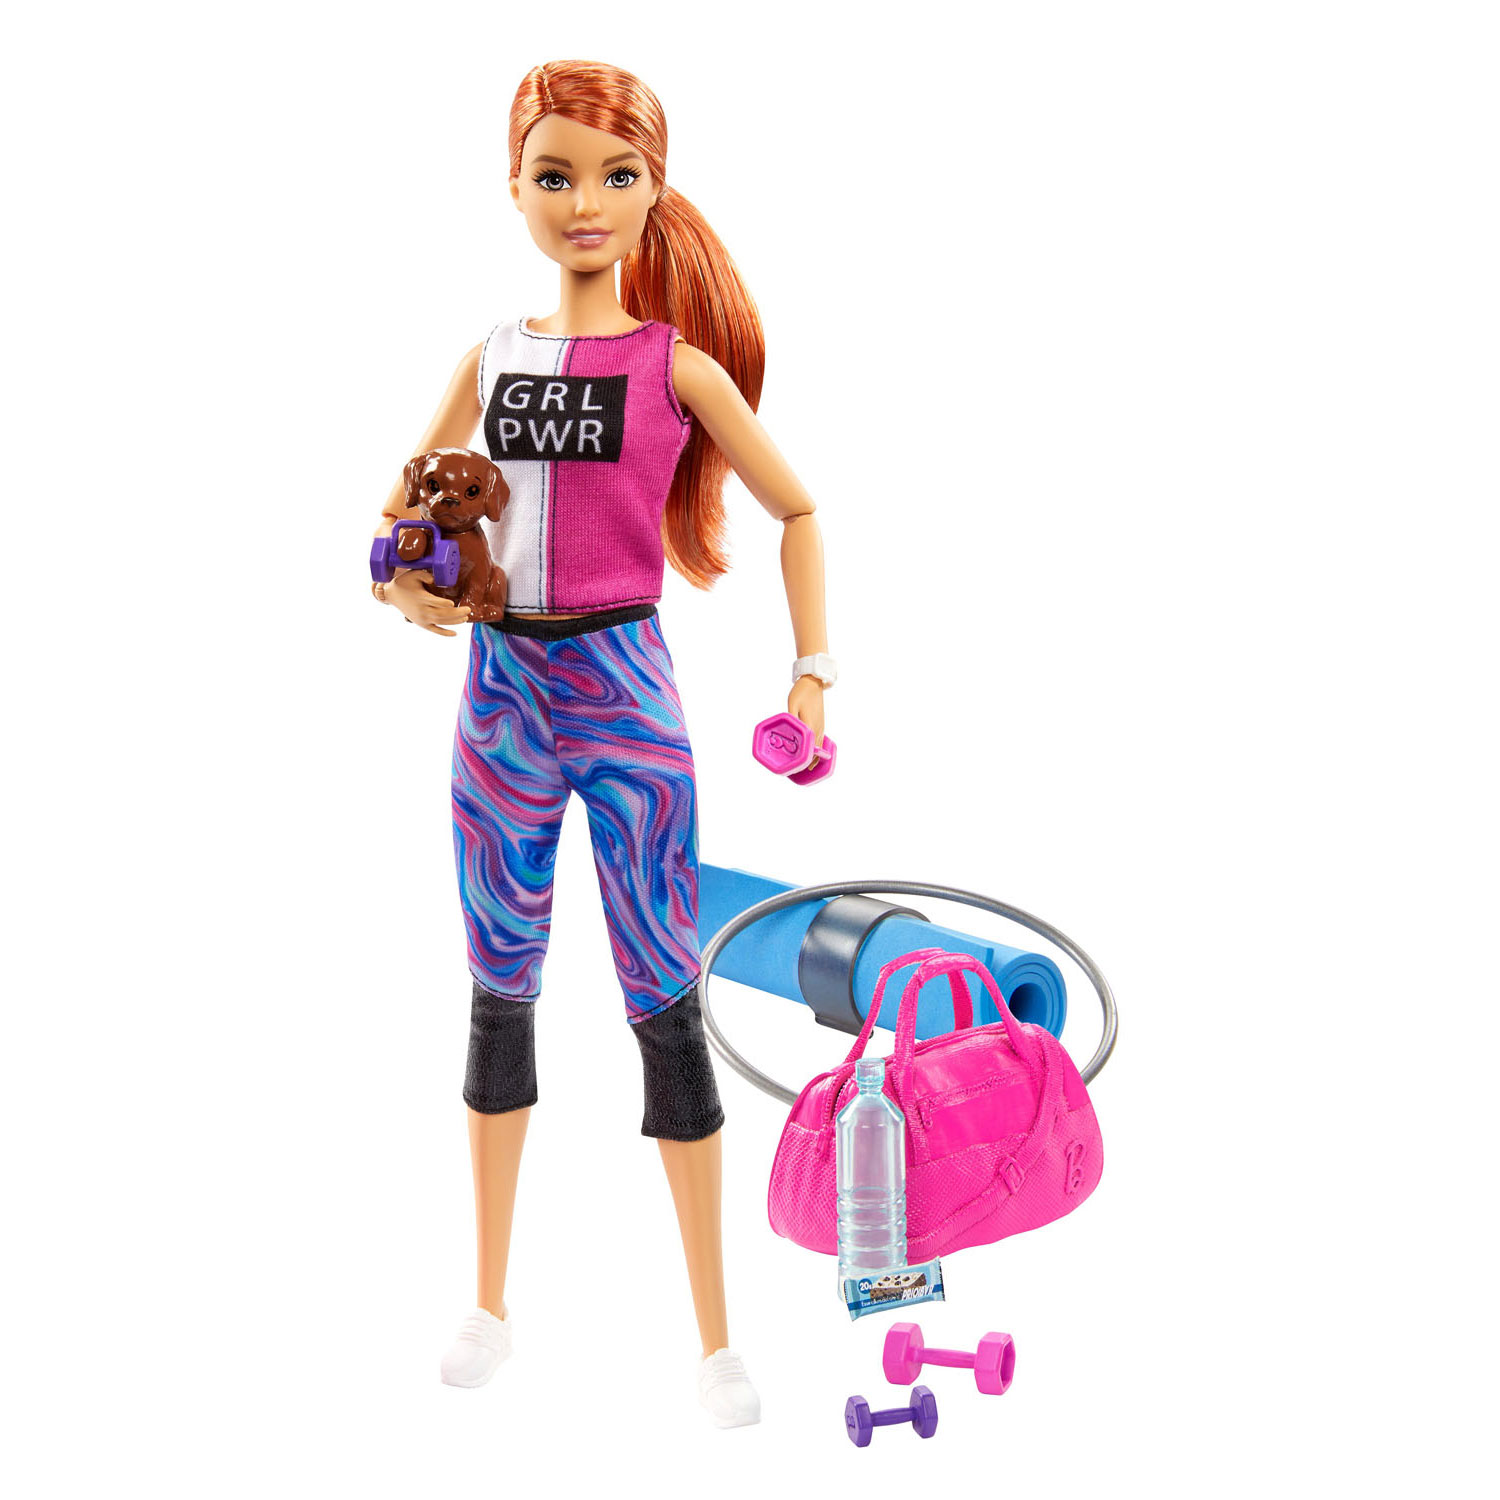 Dislocatie bad Regeringsverordening Barbie Wellness - Yoga Barbiepop online kopen? | Lobbes Speelgoed